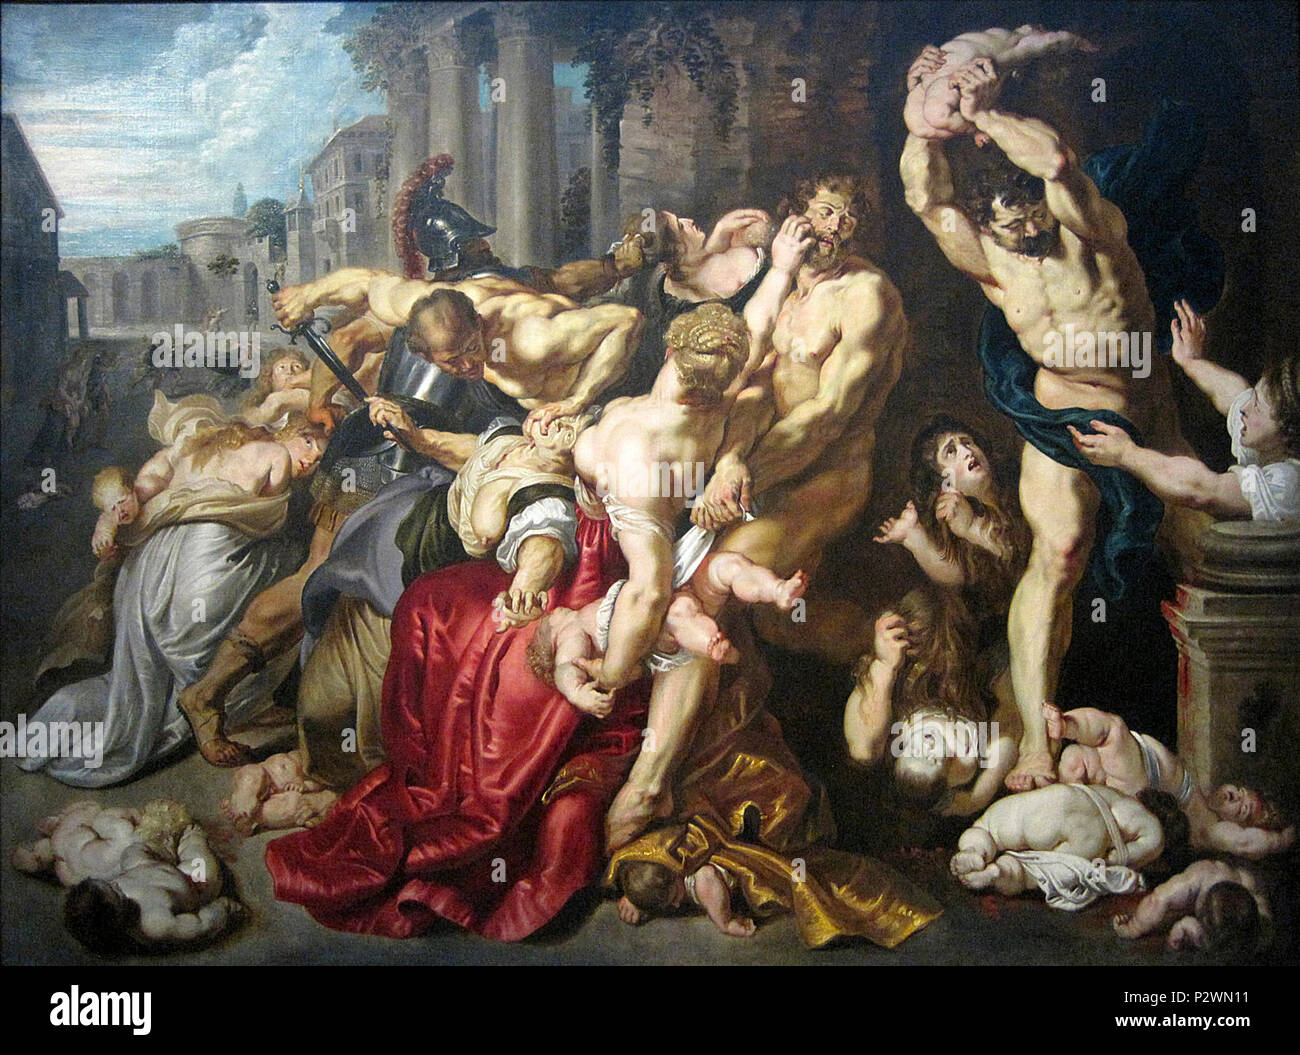 « Le Massacre des Innocents », huile sur bois (Hauteur. 142 cm ; largeur. 182 cm) d’après Pierre Paul Rubens vers 1610-1612, appartenant aux musées royaux des beaux-arts de Belgique de Bruxelles. - Inv. 3639, photographiée lors de l’exposition temporaire « Rubens et son Temps » au musée du Louvre-Lens. 0 Le Massacre des Innocents d'aprA8s P.P. Rubens - MusA9es royaux des beaux-arts de Belgique (2) Stock Photo